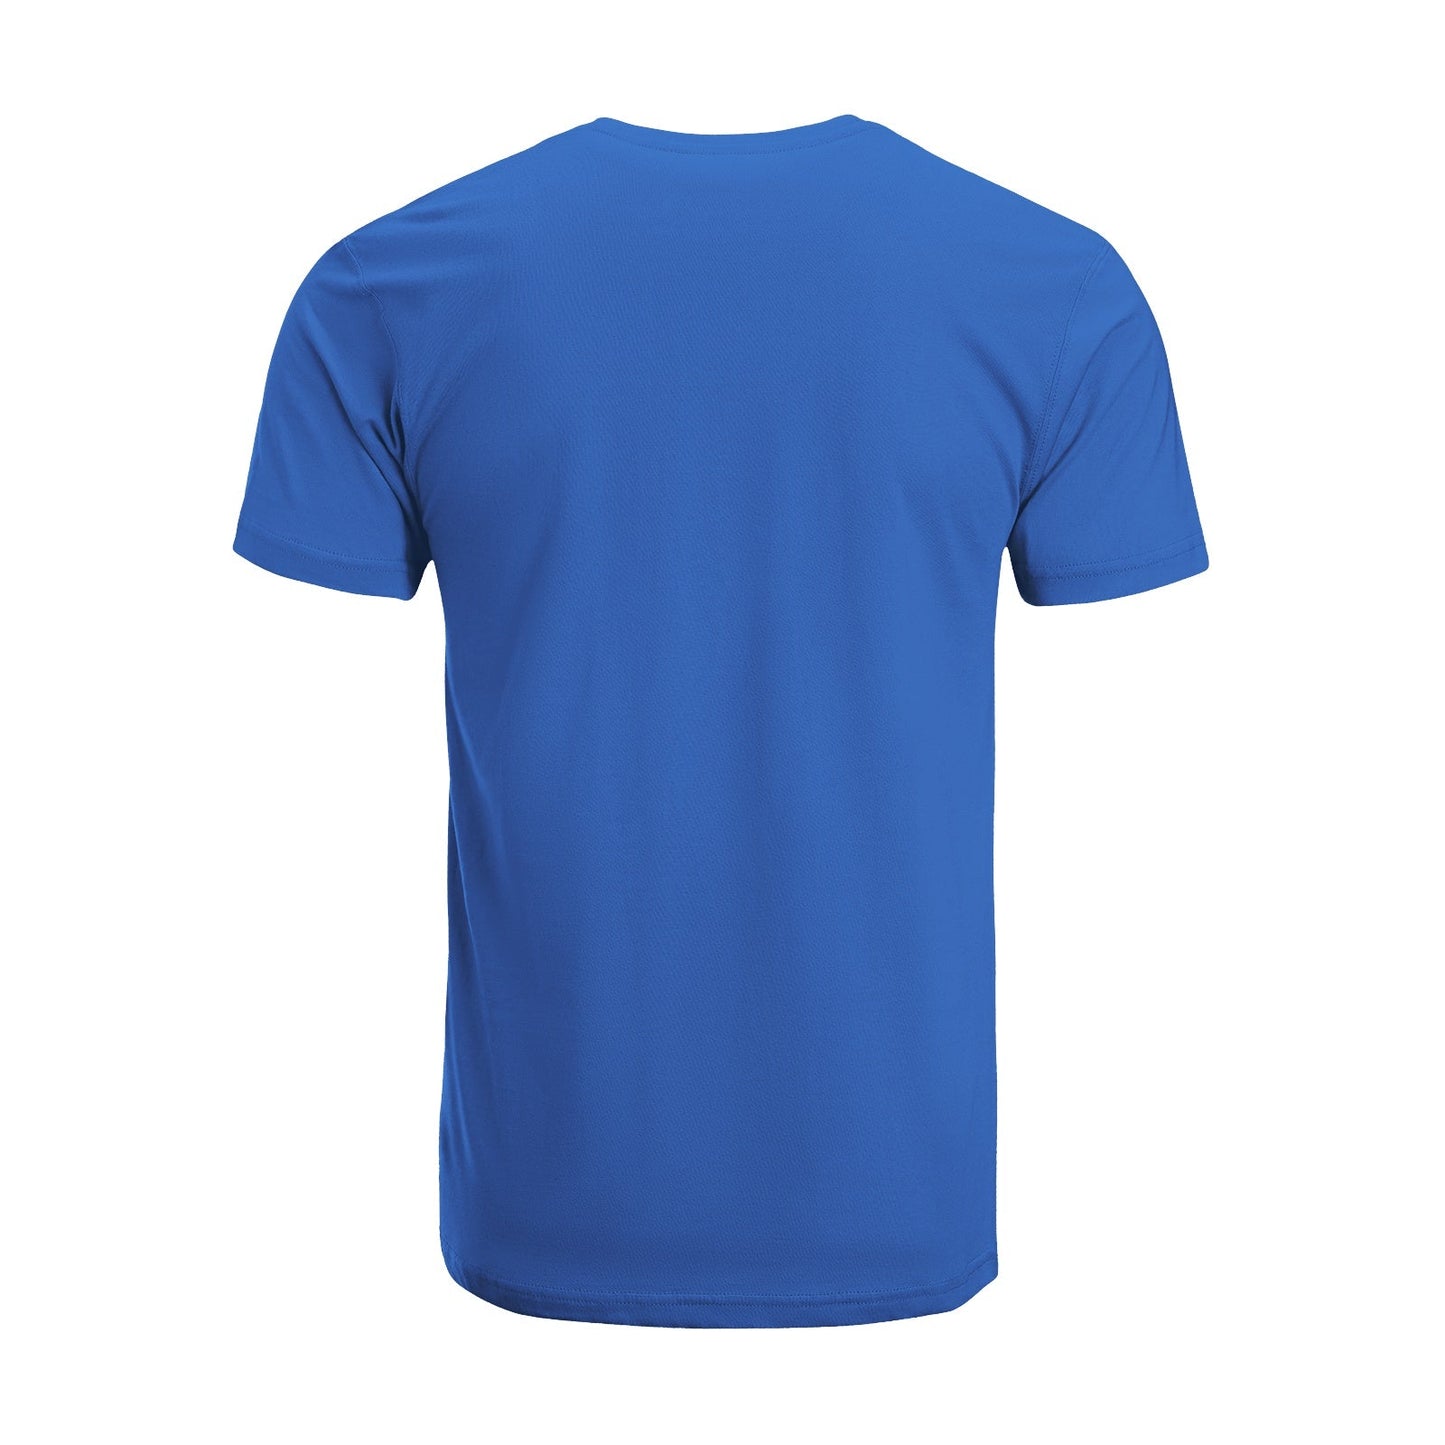 Unisex Short Sleeve Crew Neck Cotton Jersey T-Shirt TRUCK 24